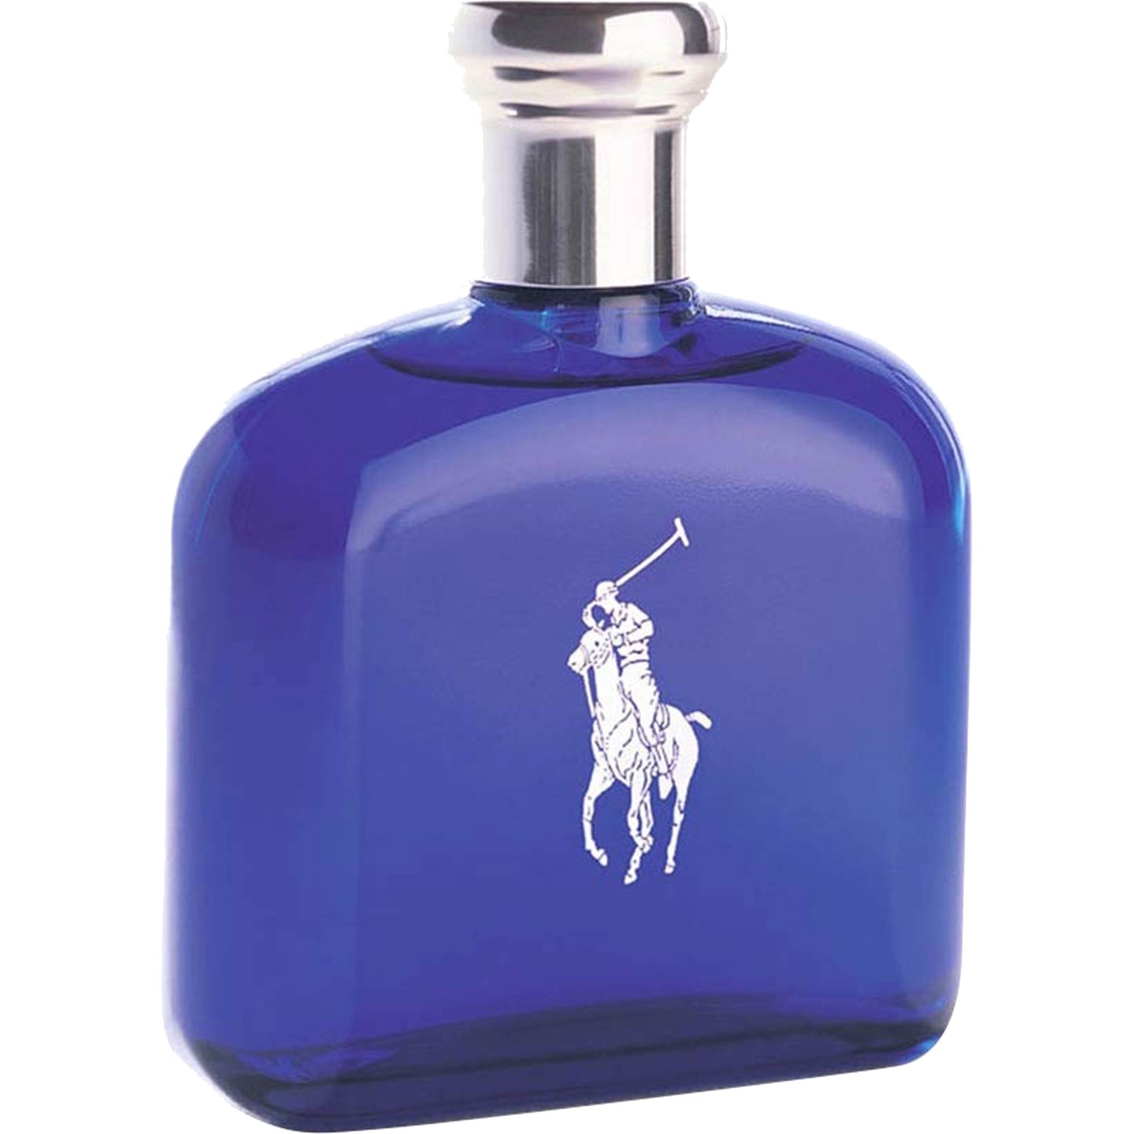 Ralph Lauren Polo Blue Sport Eau De Toilette Spray | Men's Fragrances ...